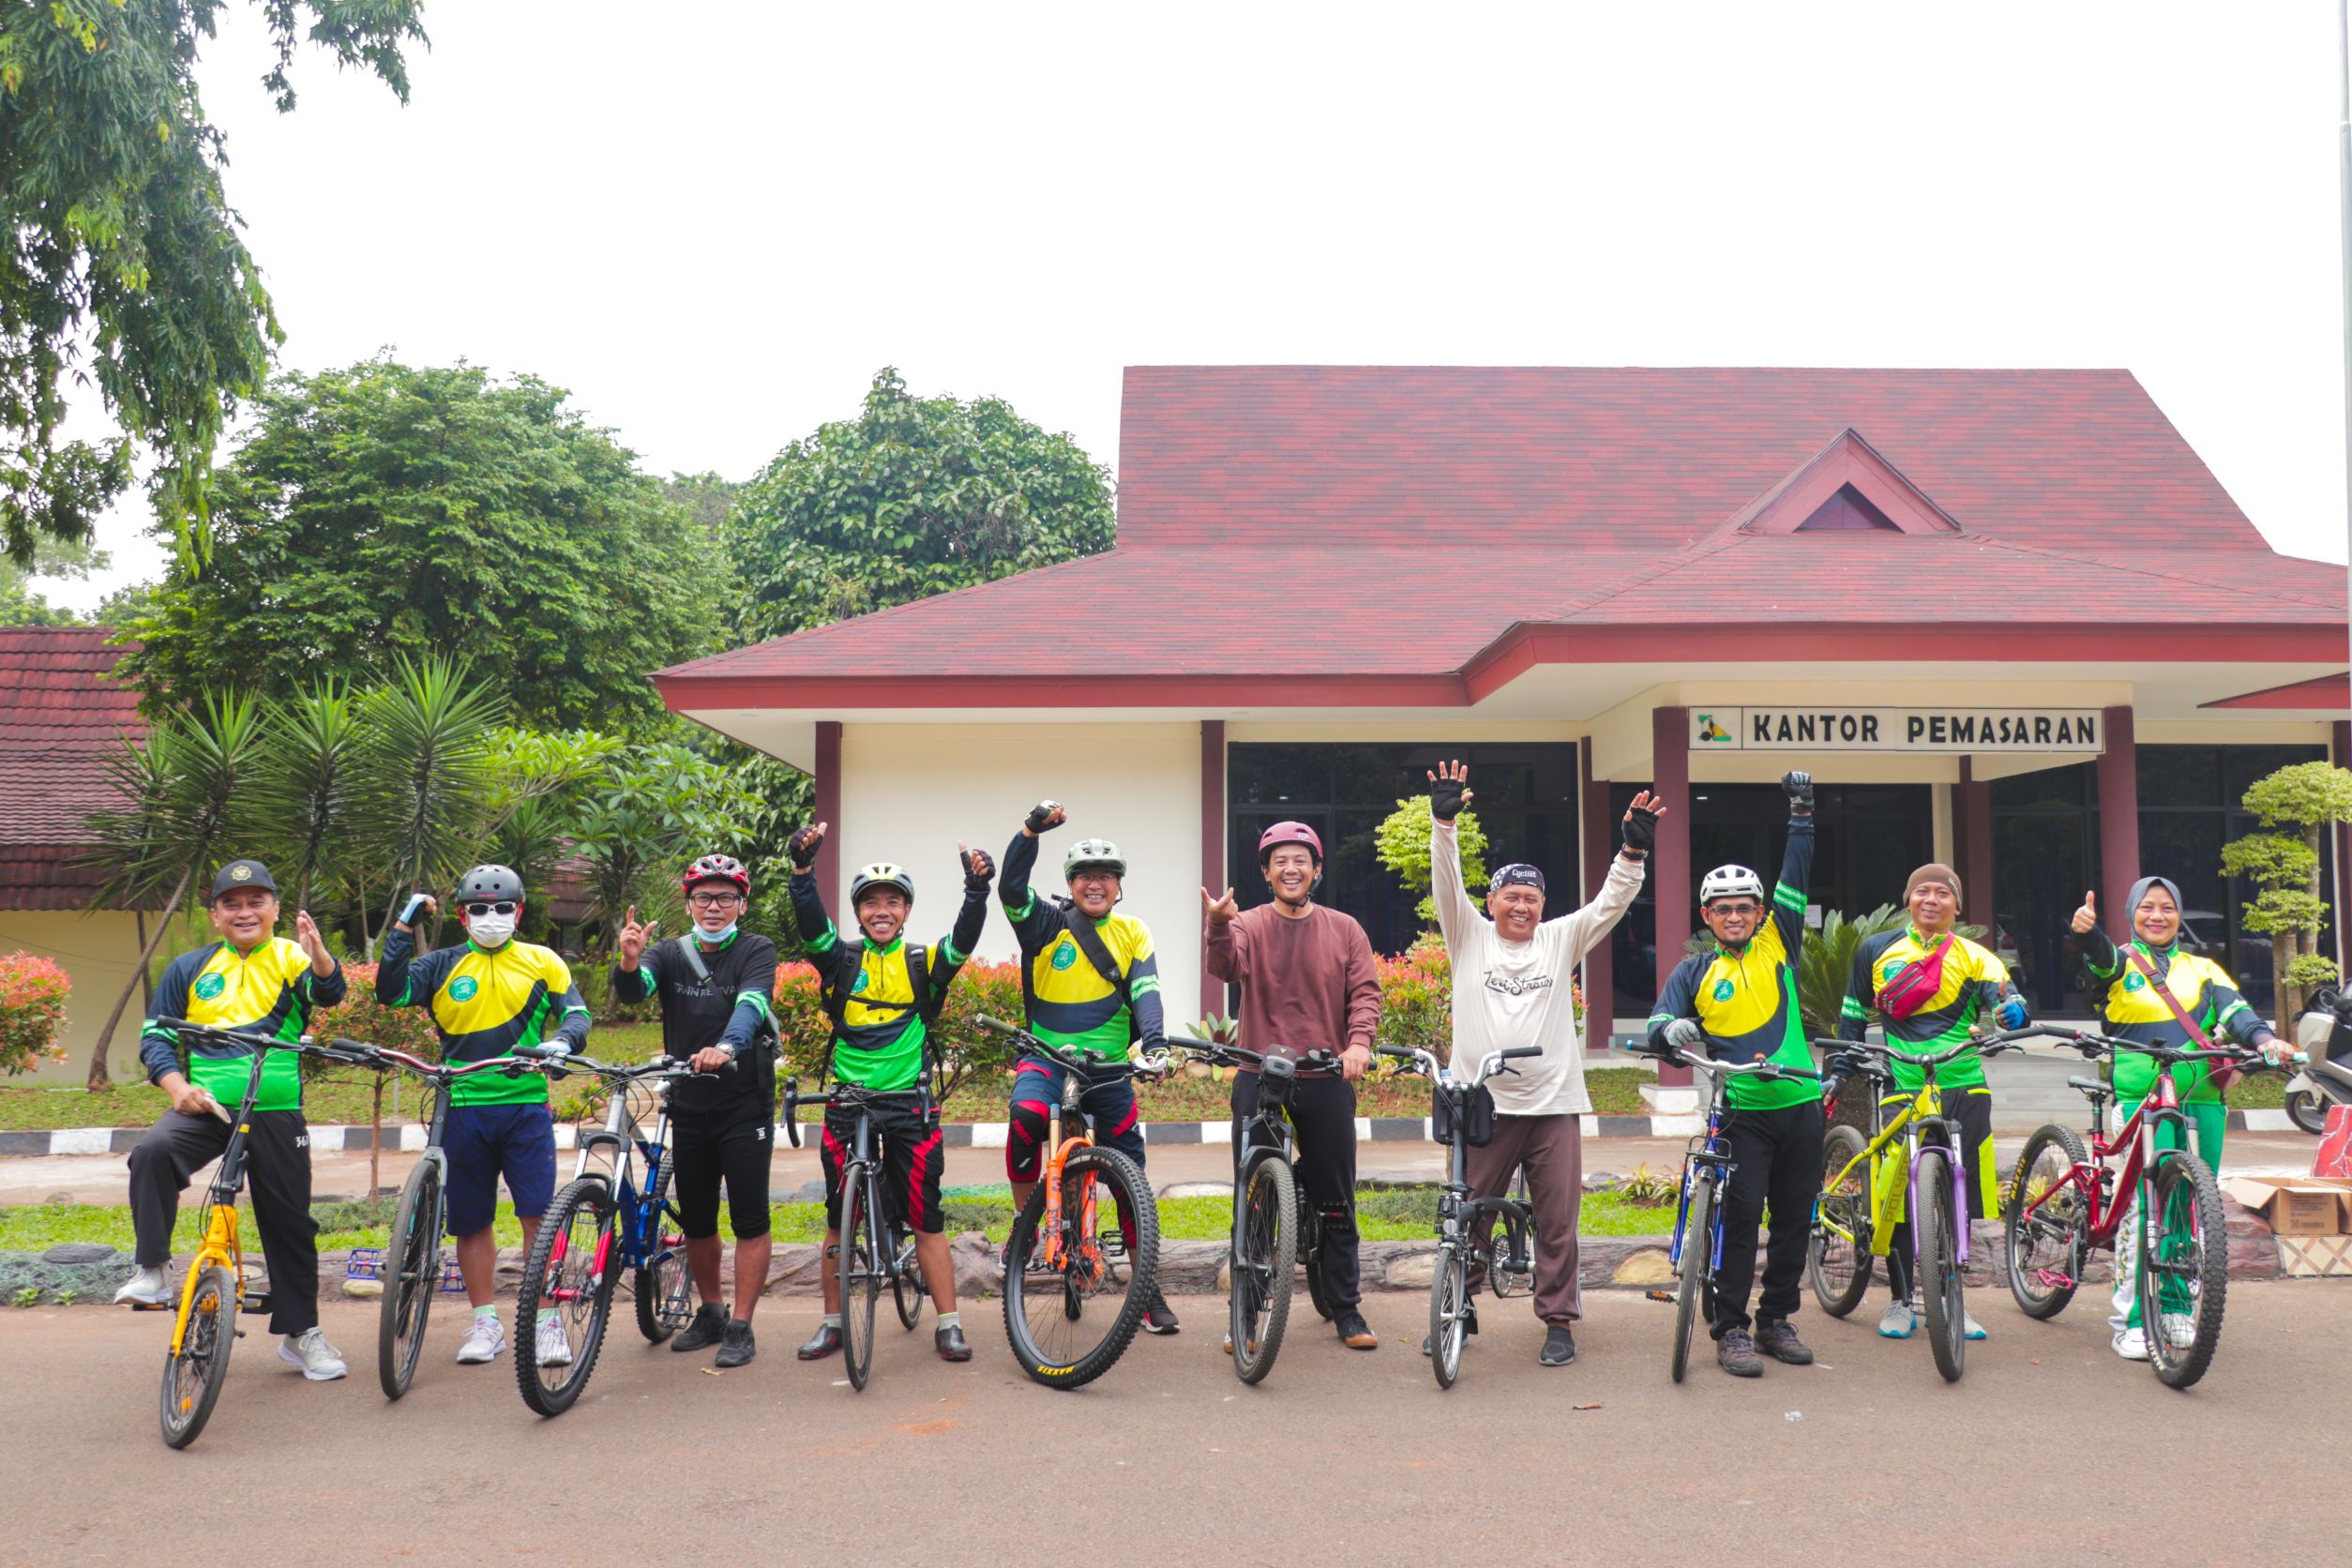 Unas Resmikan Klub Sepeda (UCC) di Bumi Perkemahan Cibubur